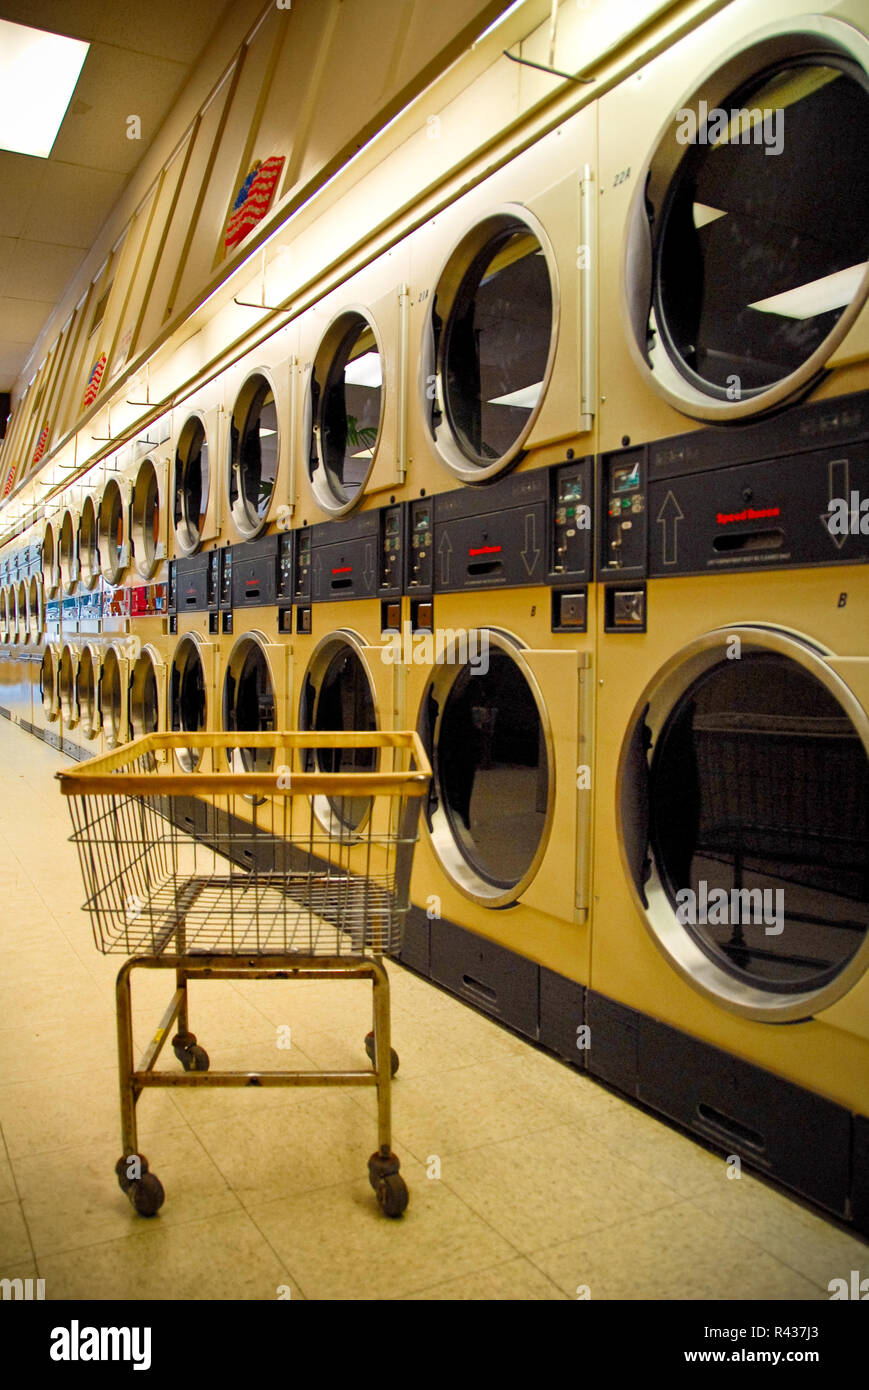 Un carro de ropa se sienta en frente de una larga línea de máquinas de lavar en una lavandería local. Foto de stock